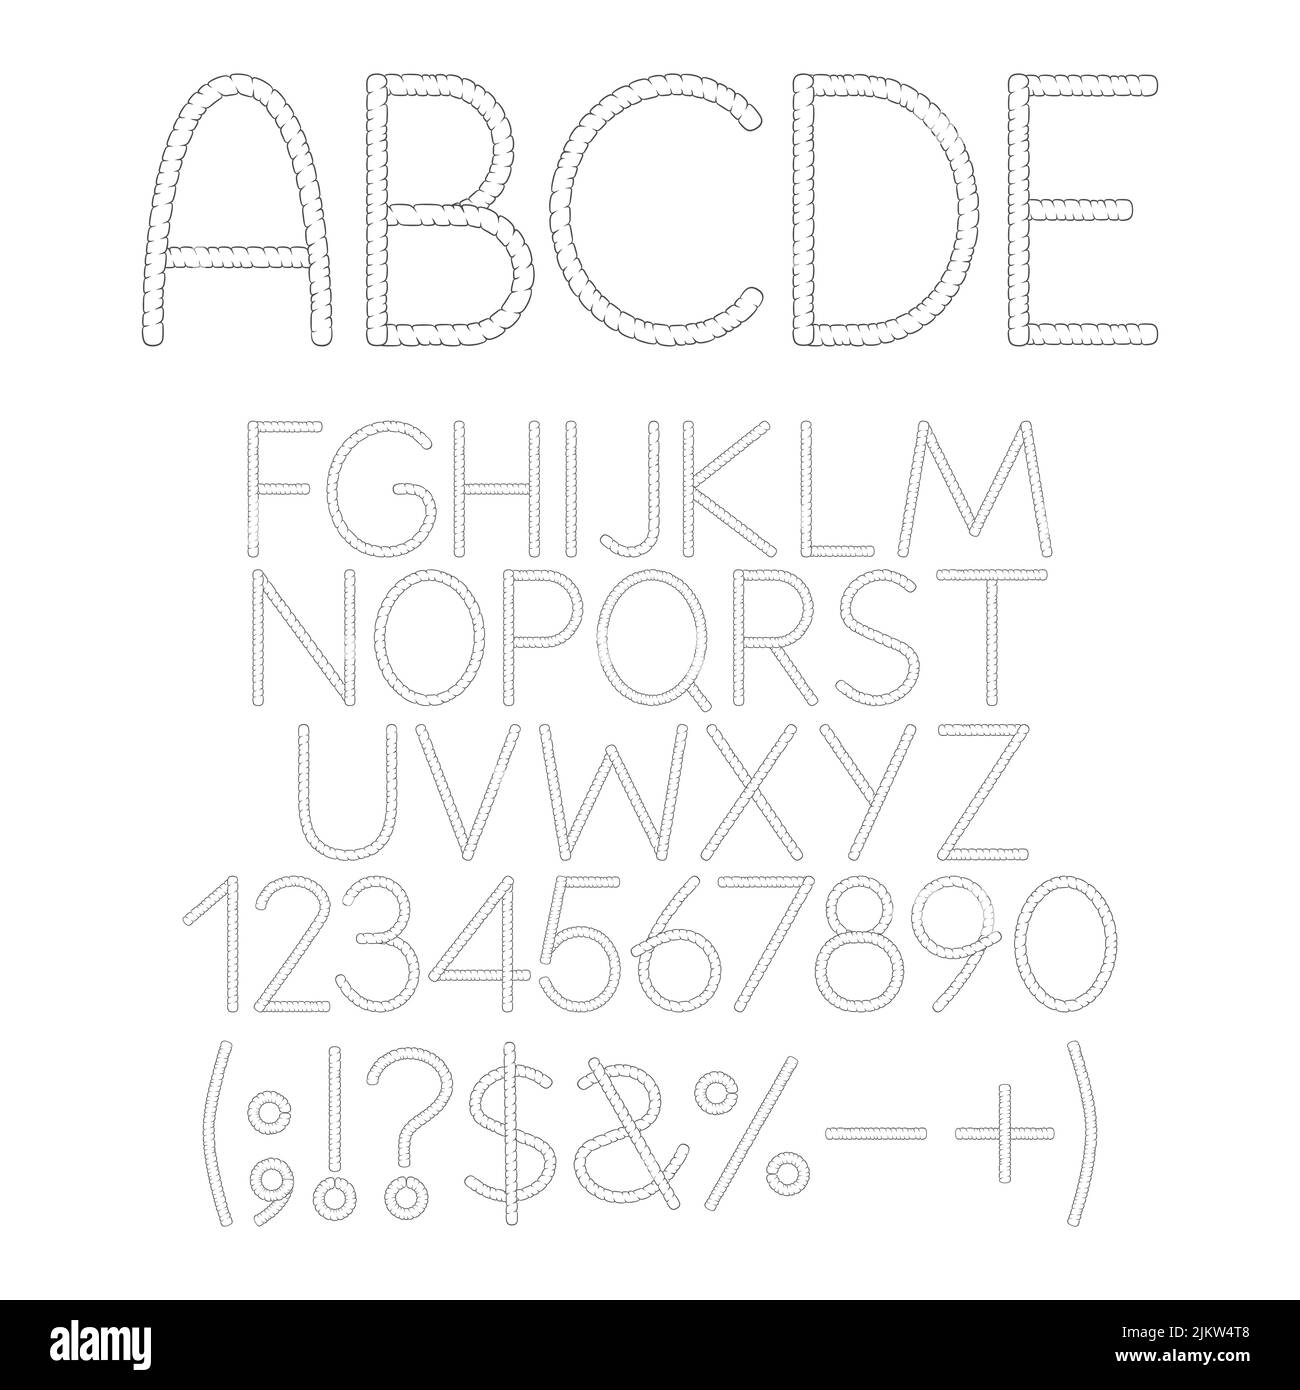 Carattere, alfabeto, lettera, numero e segno dai blocchi. Oggetti isolati in bianco e nero su sfondo bianco. Illustrazione Vettoriale